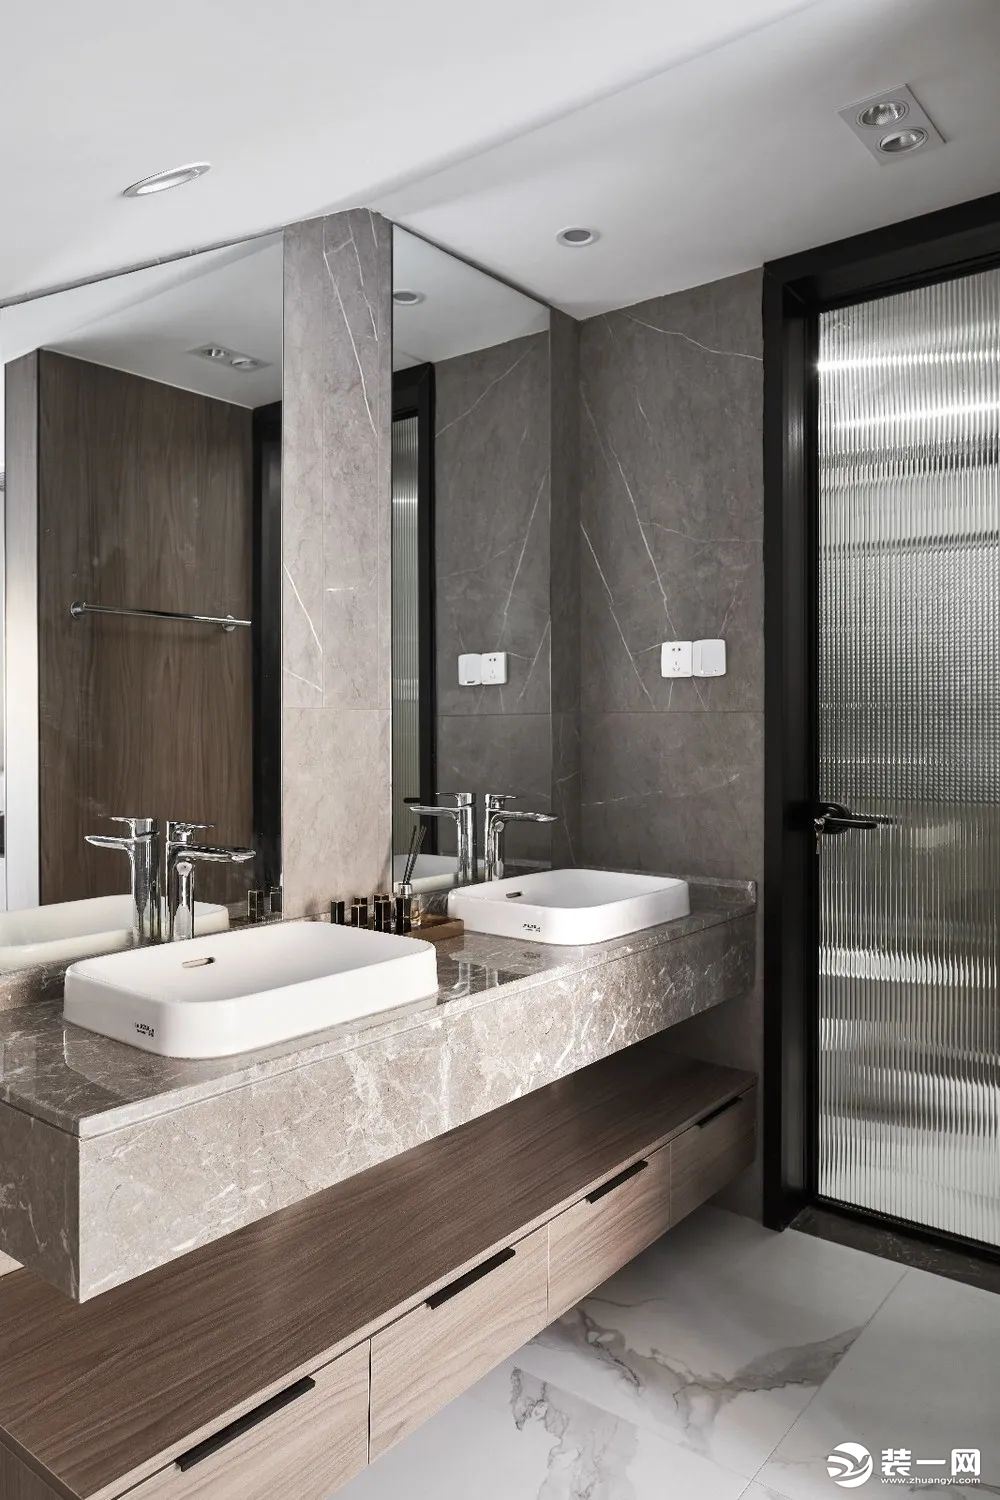 卫生间的洗手盆外置在过道区，设置双人位洗手台，整个空间显得现代低调而又品质优雅。